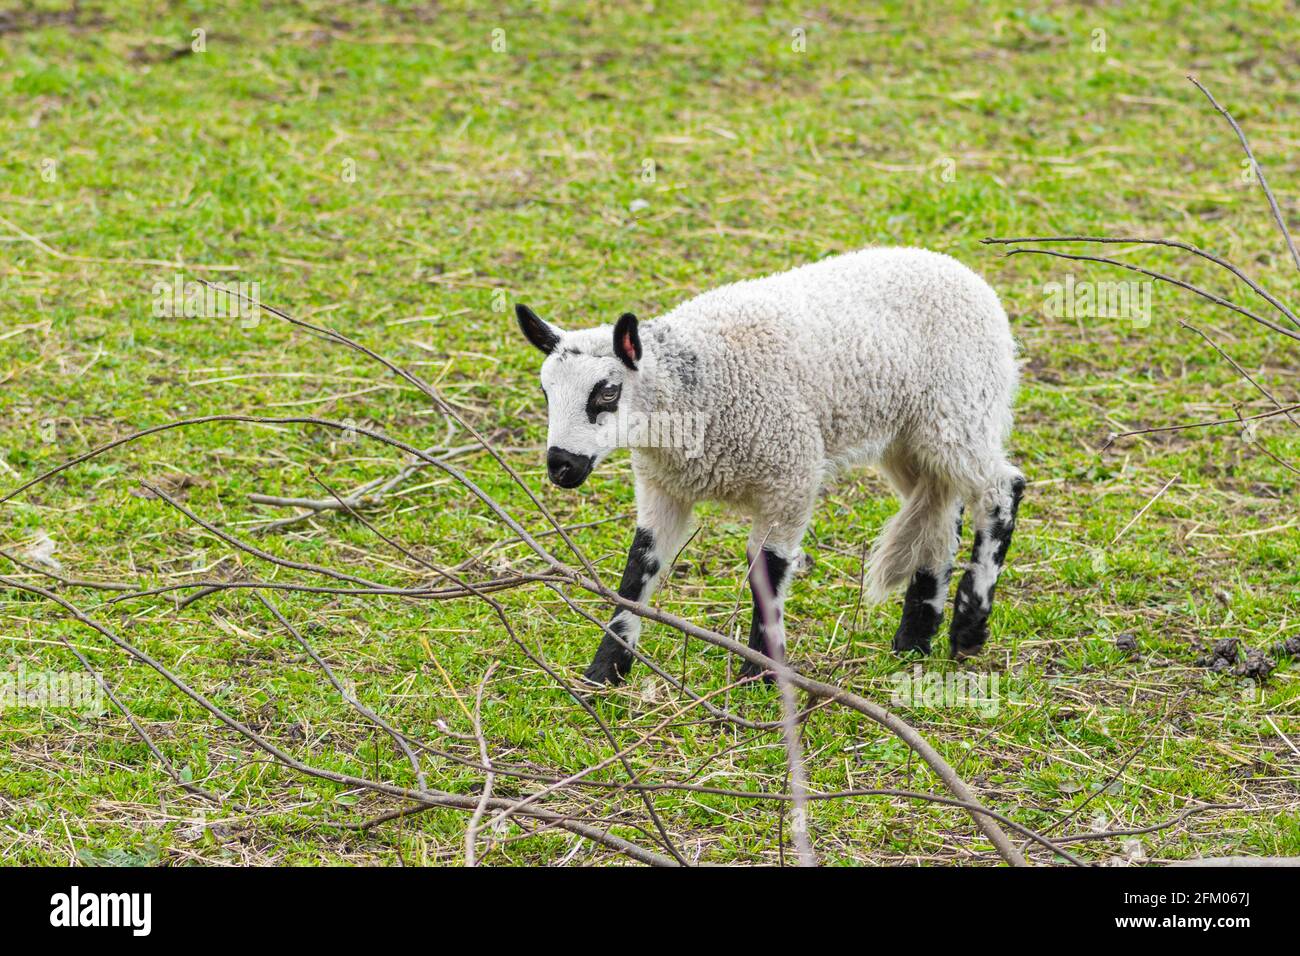 Carino bambino di agnello di pecora di collina di Kerry, è una razza di pecora domestica che ha origine nella contea di Powys in Galles, lana è bianca e le loro gambe sono bianche Foto Stock